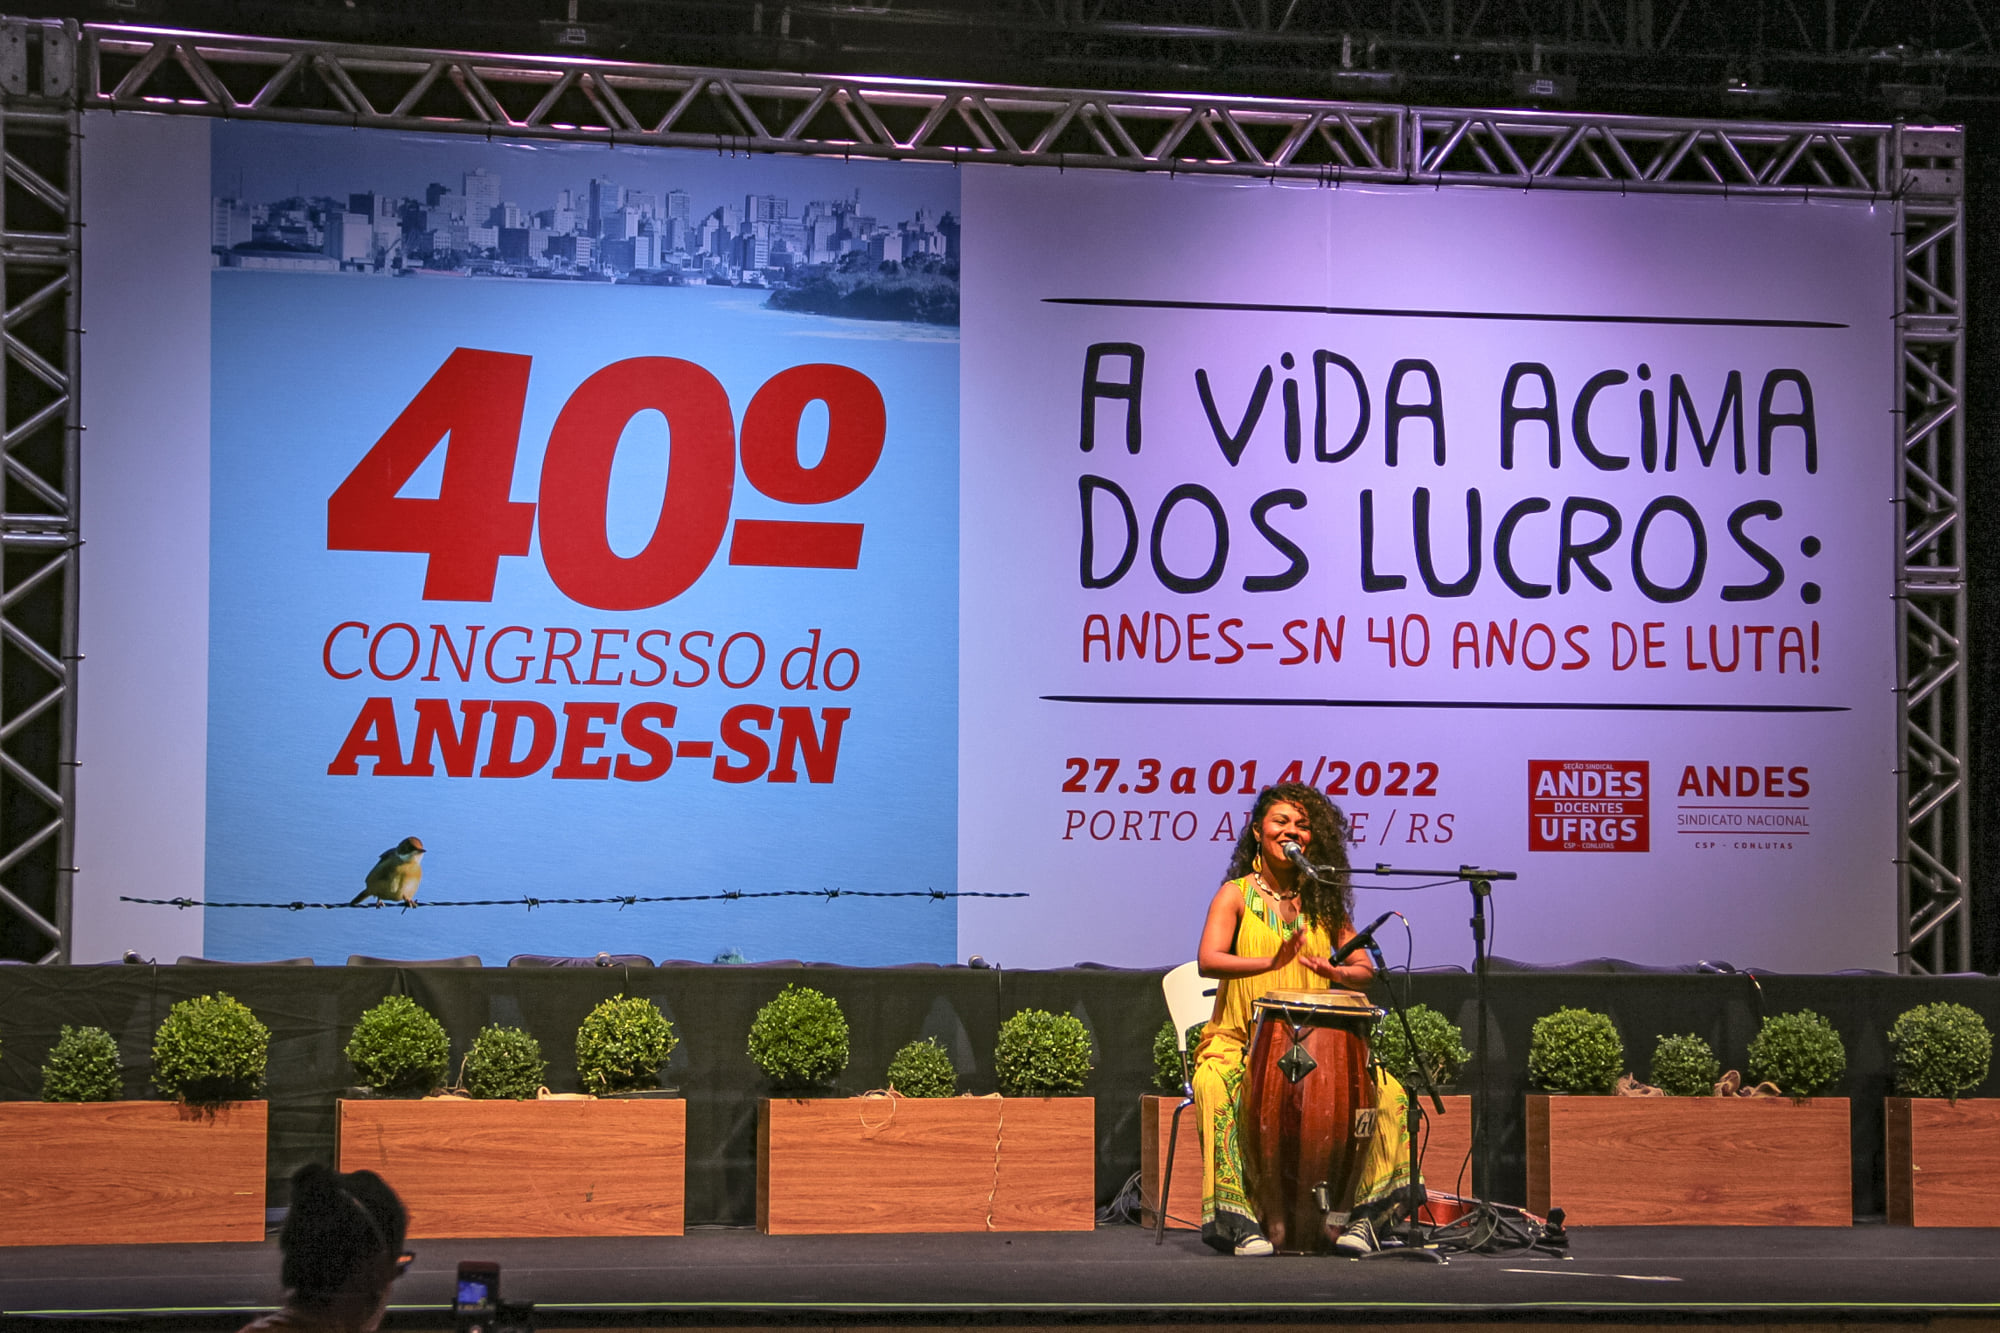 andes 40 congresso 04 — Vida acima dos lucros e fora Bolsonaro marcam abertura do 40º Congresso do ANDES-SN — ADunicamp